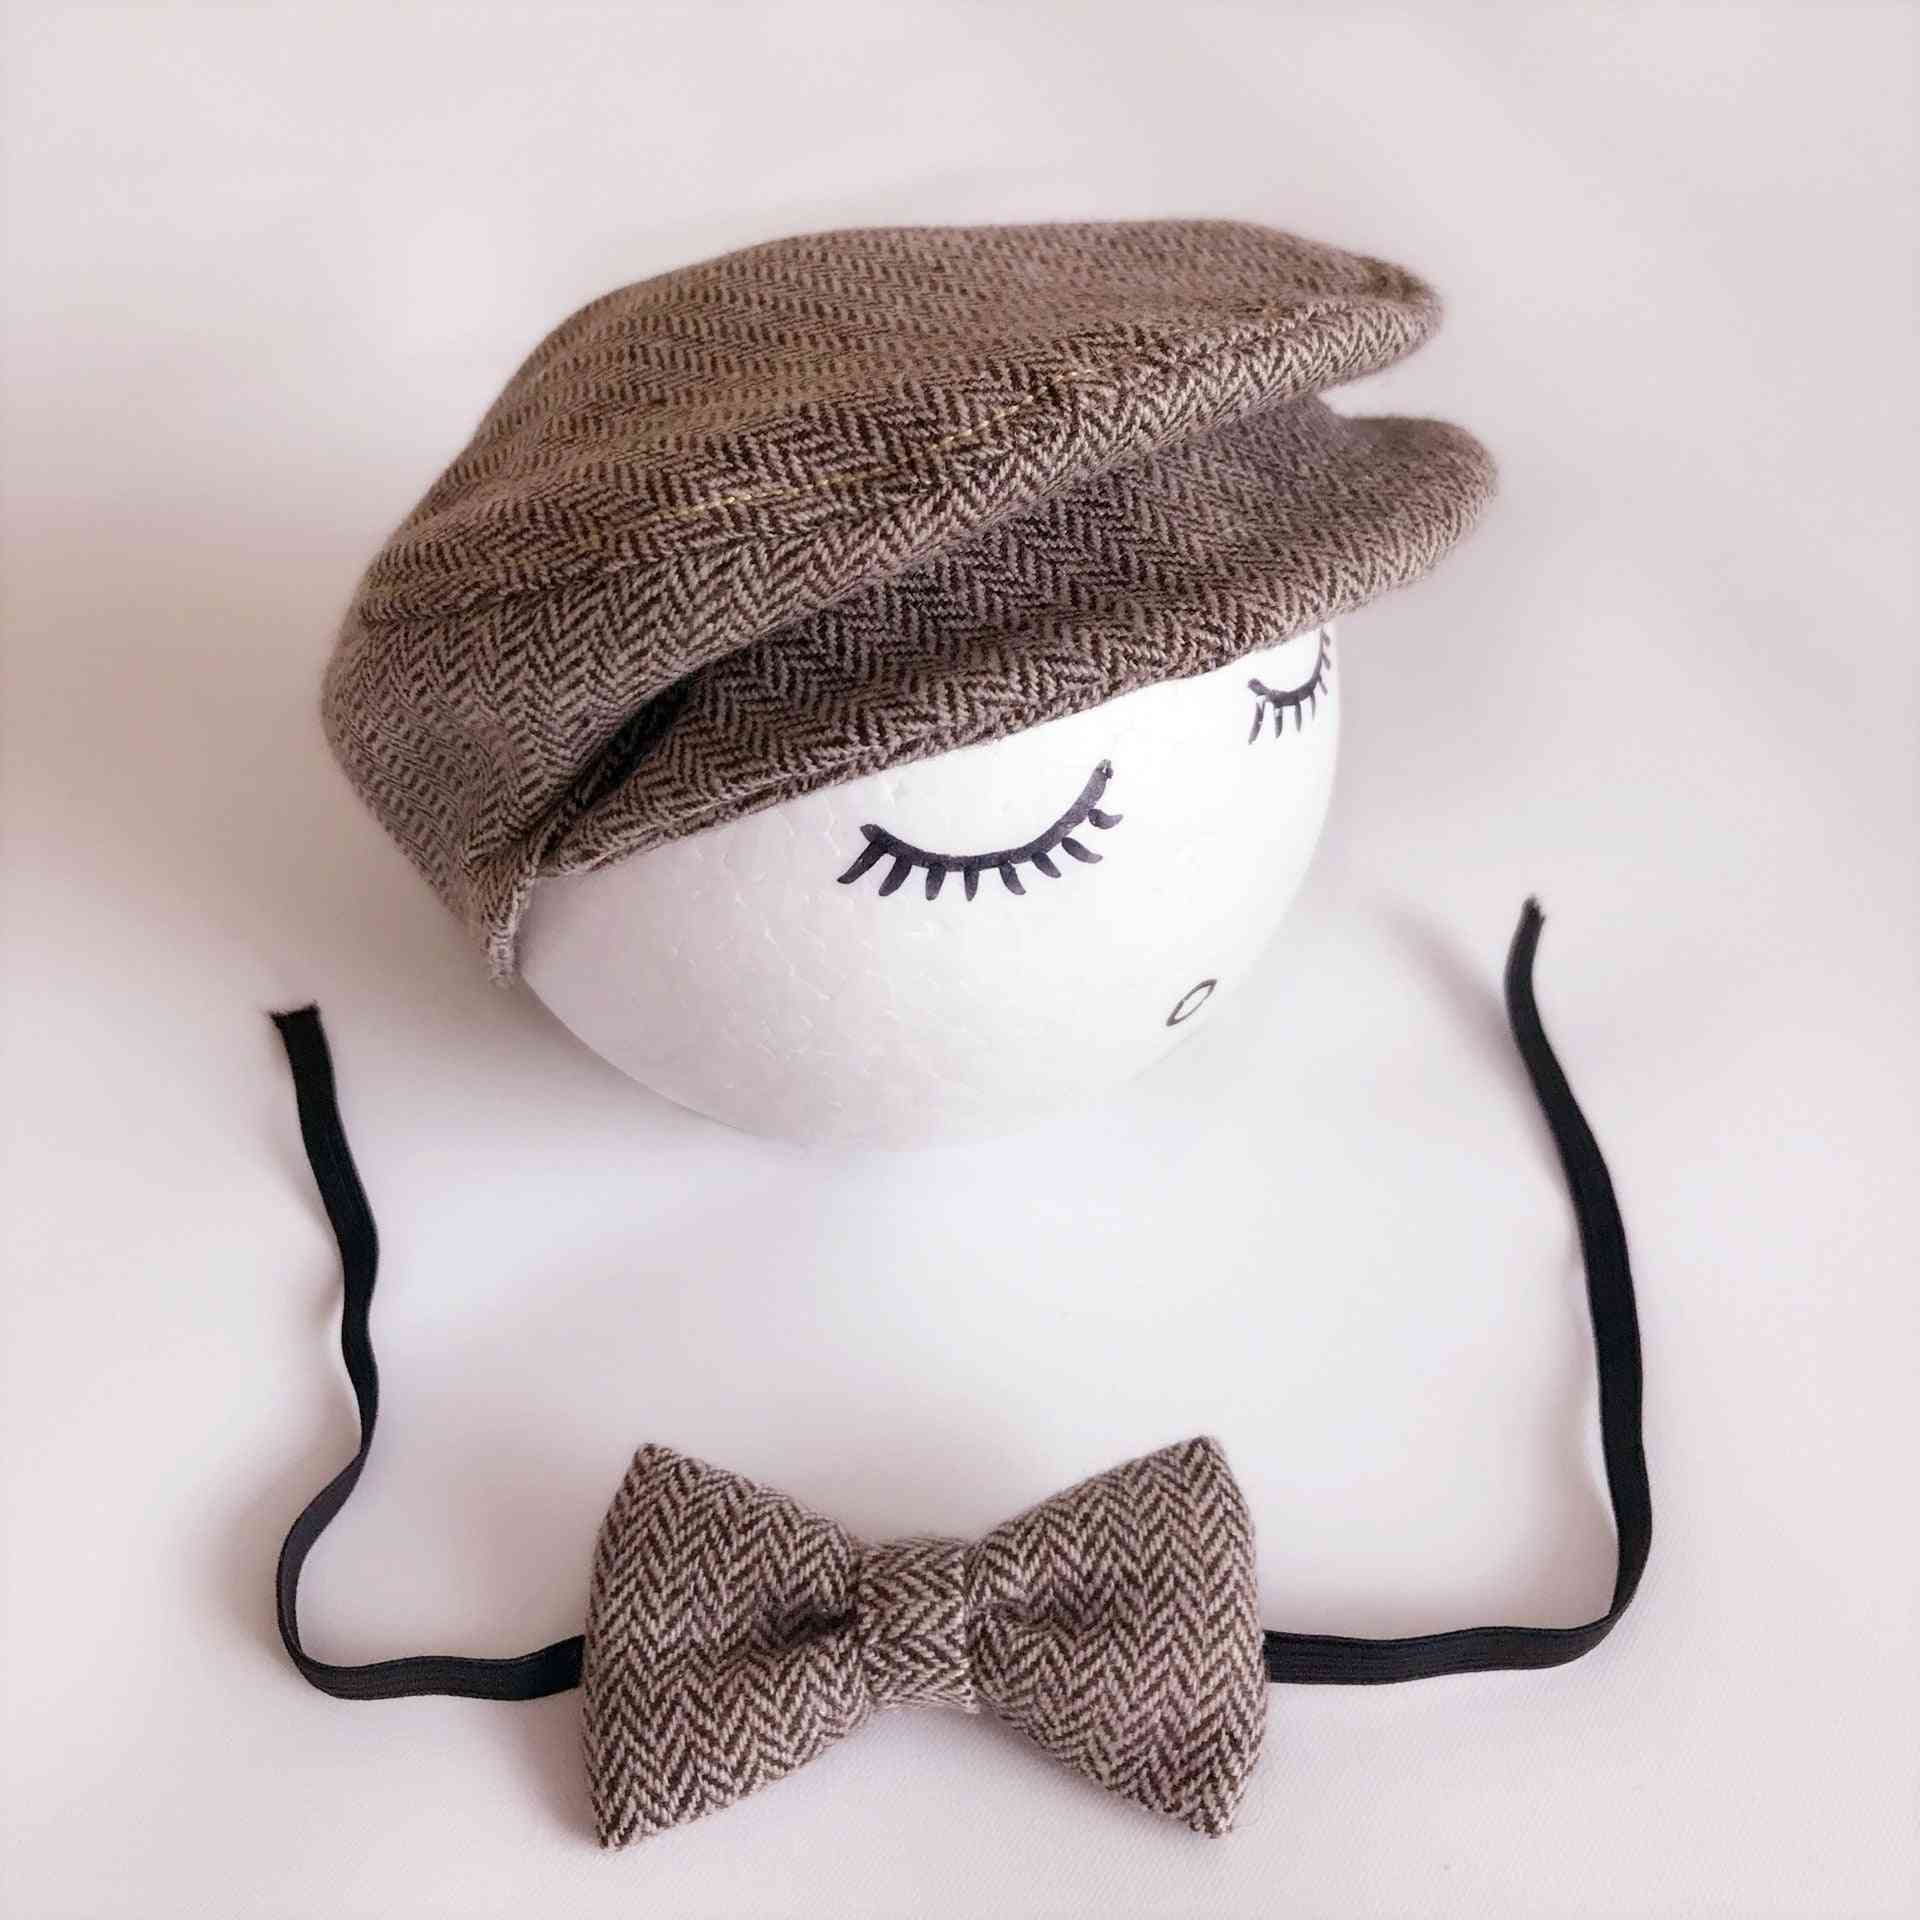 Newborn Baby Boy Hat Costume Little Gentleman Bow Tie Photography Props Studio Accessories